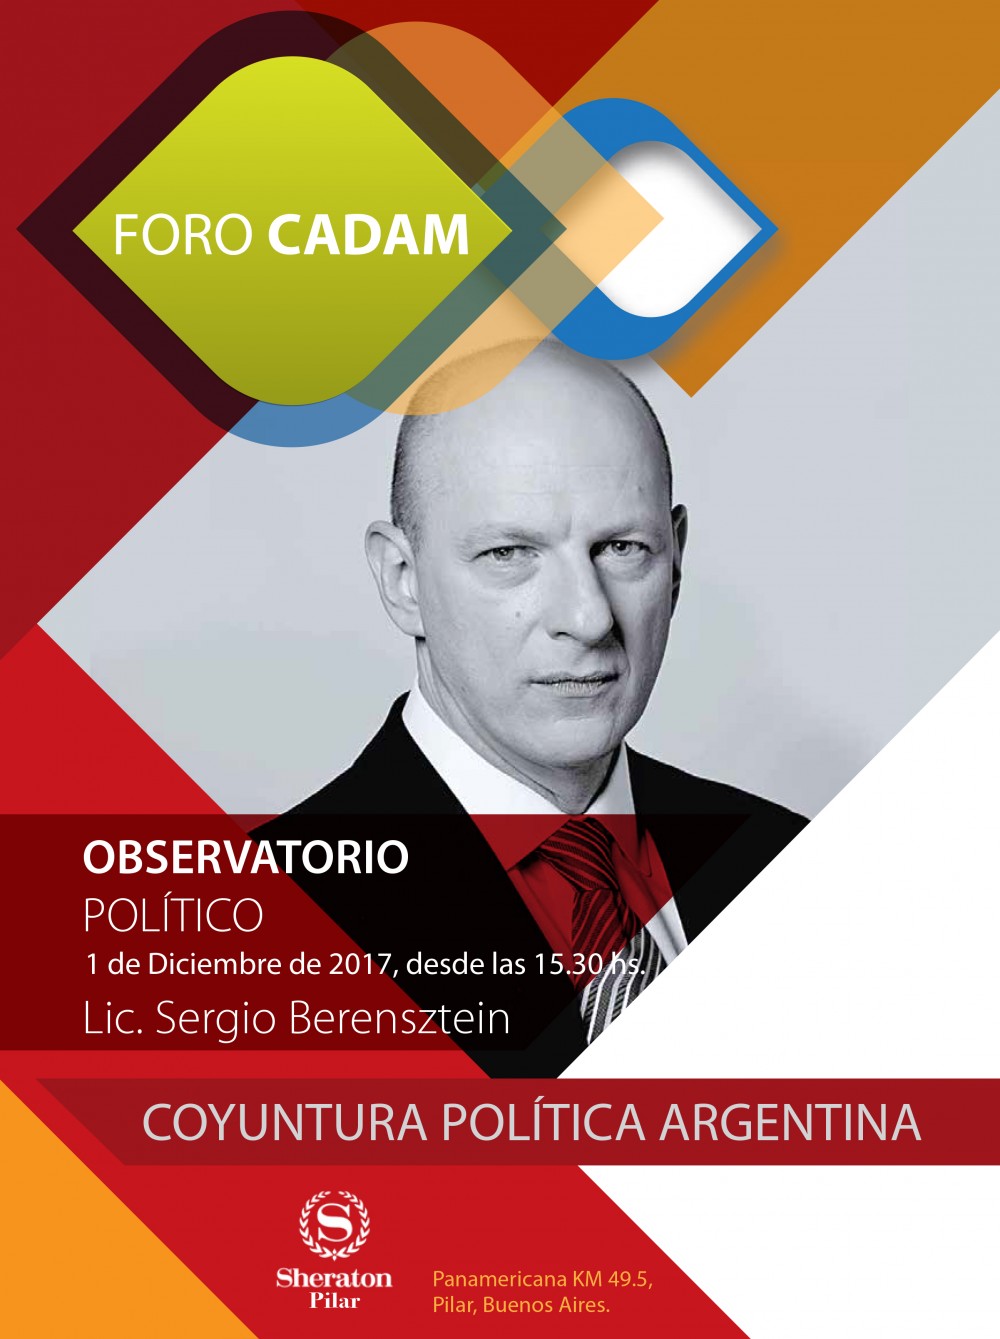 Observatorio político: Coyuntura política argentina